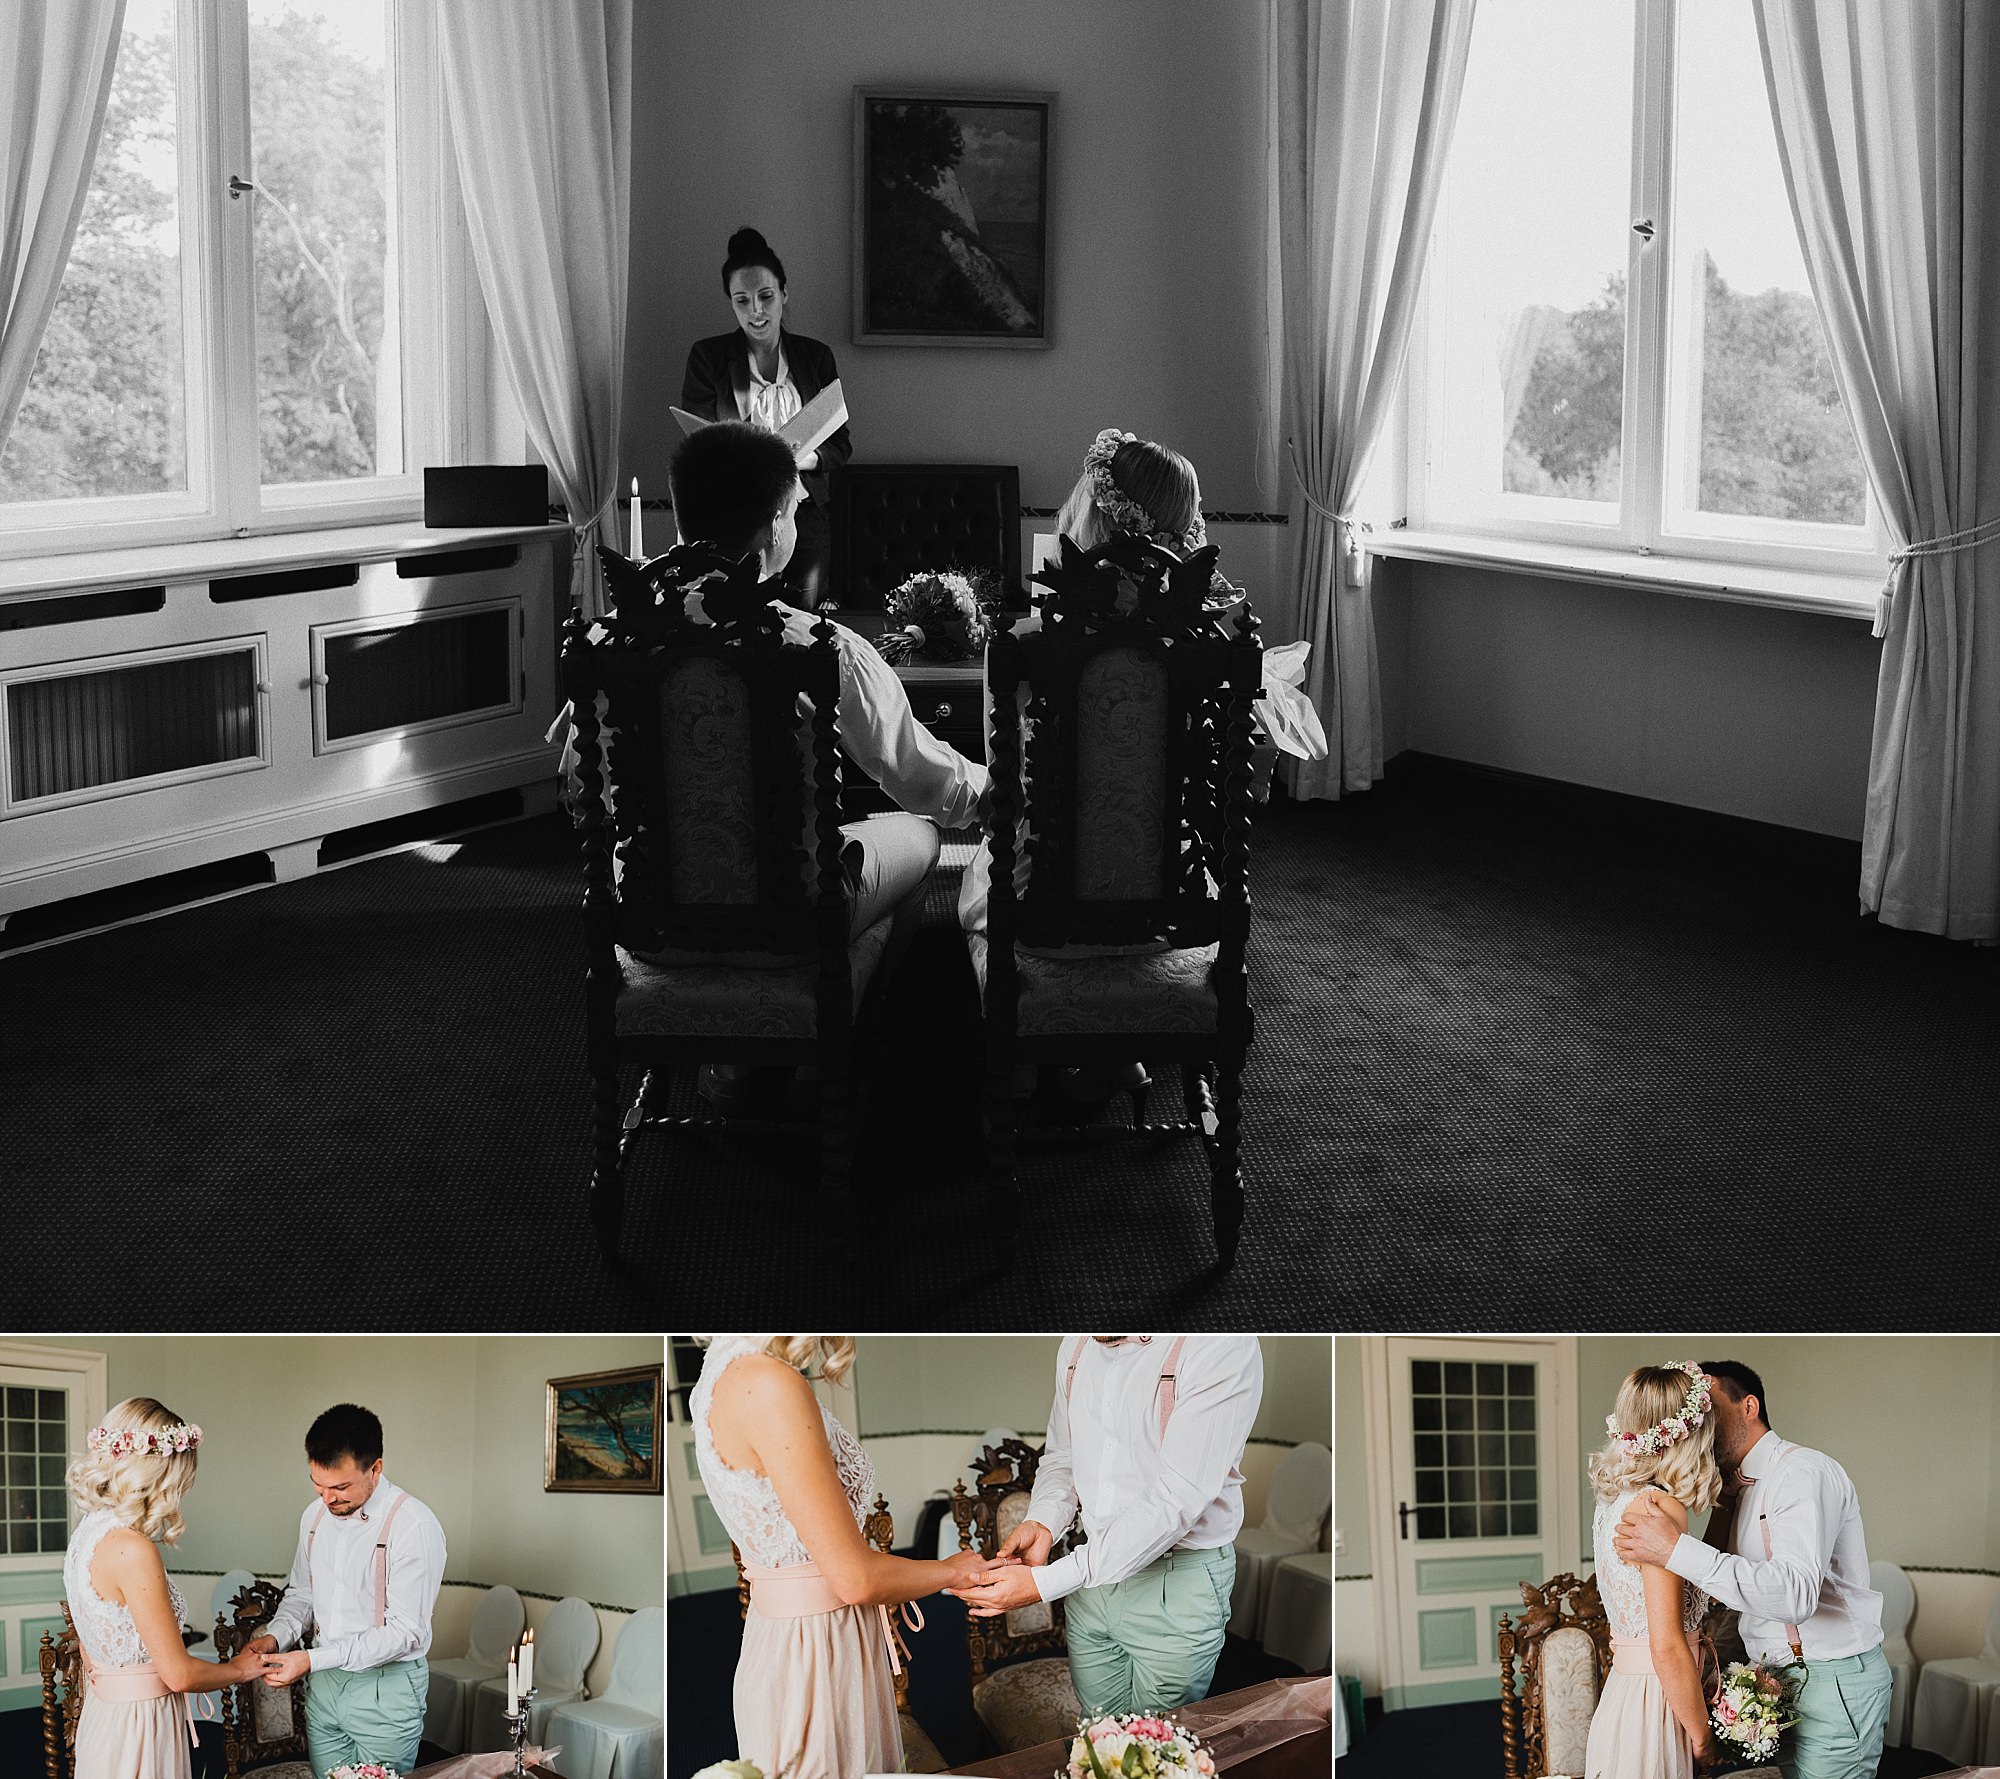 Hochzeit im Schlosshotel Ralswiek - Hochzeitsreportage auf Rügen - Heiraten im Schloss Ralswiek, Granitz oder Ranzow - Hochzeitsfotograf Ostsee